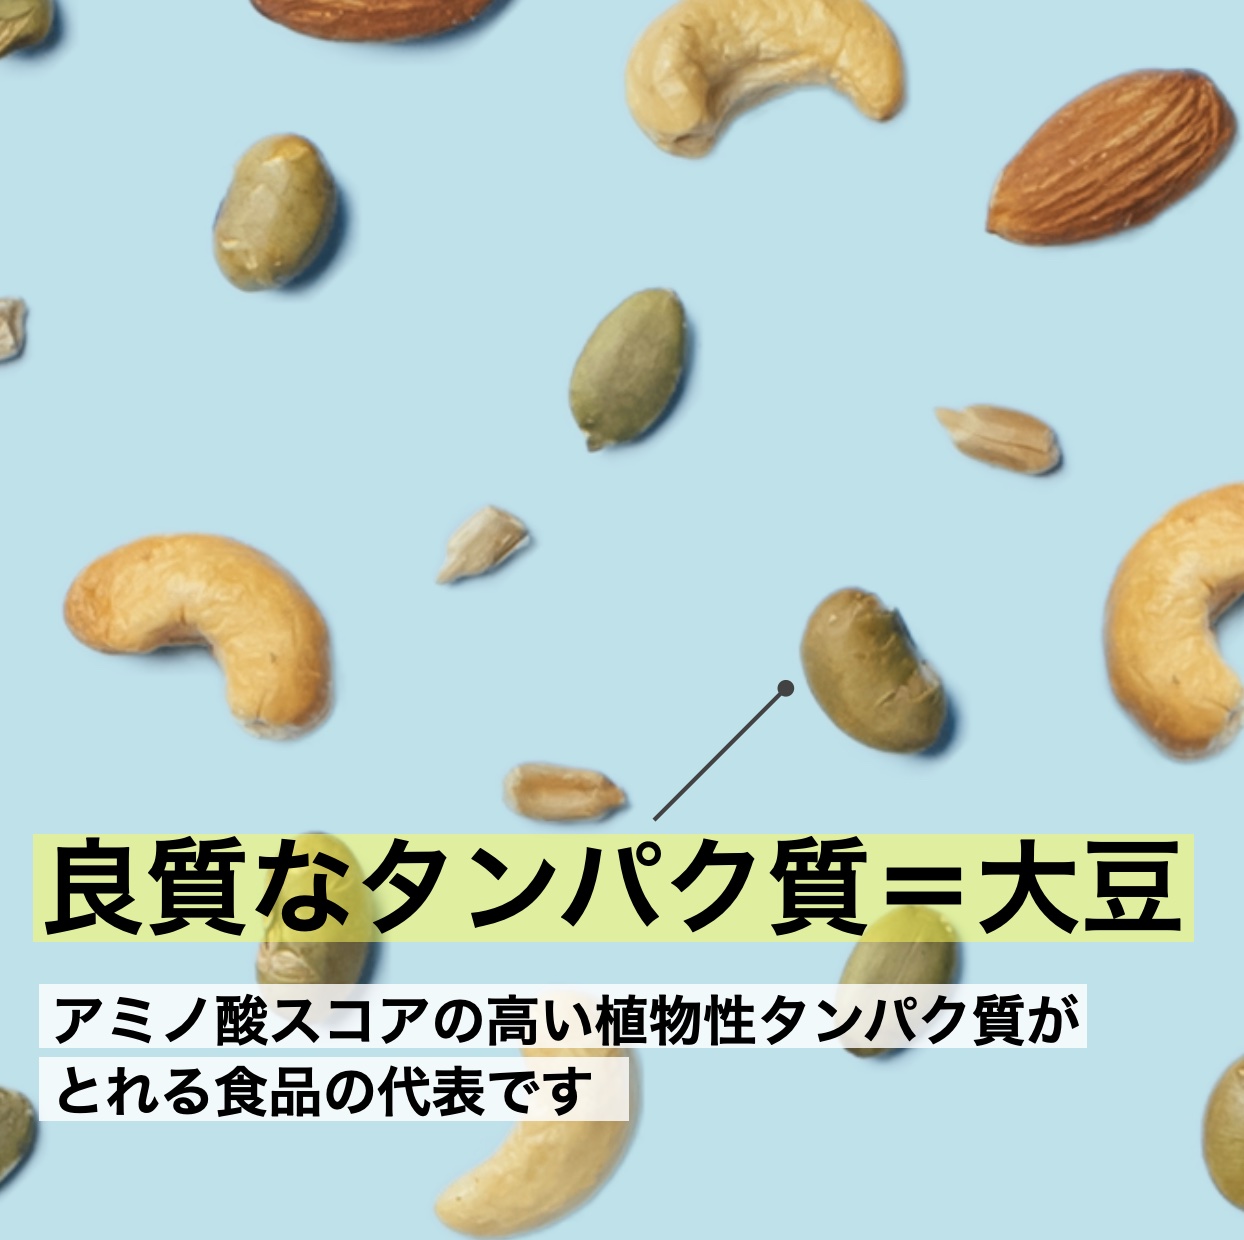 植物性タンパク質が豊富な更年期専門店オアディスワンのおきかえナッツ「たんぱくしっつ」のイメージ